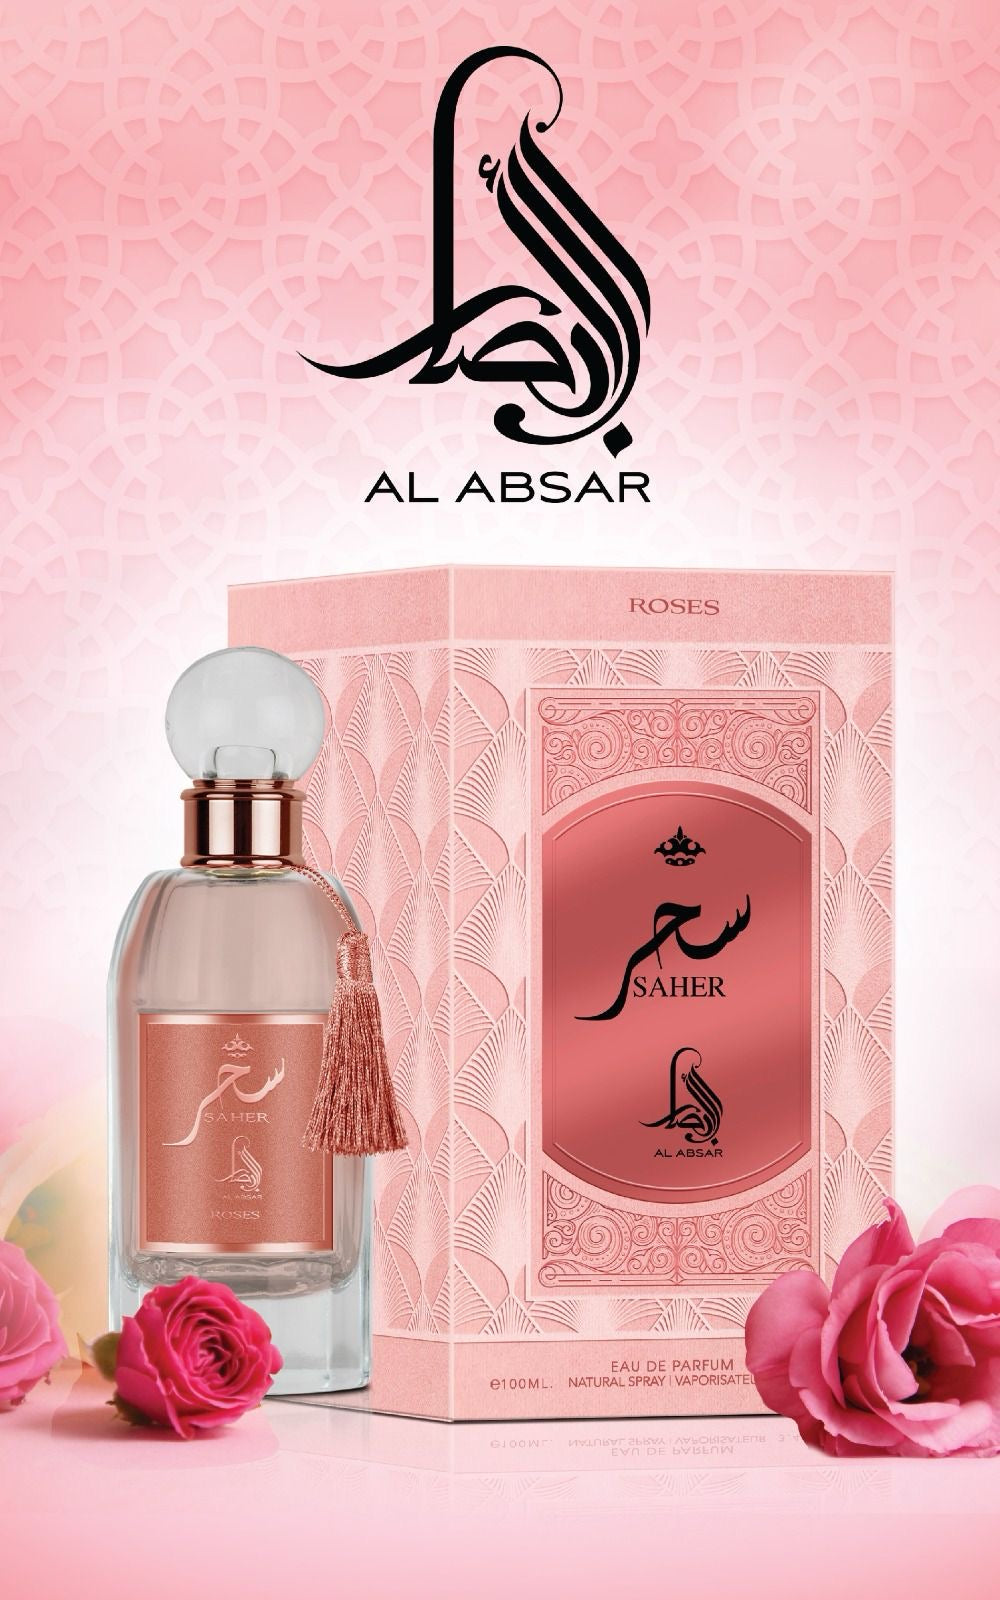 Al Saher Roses by Al Absar